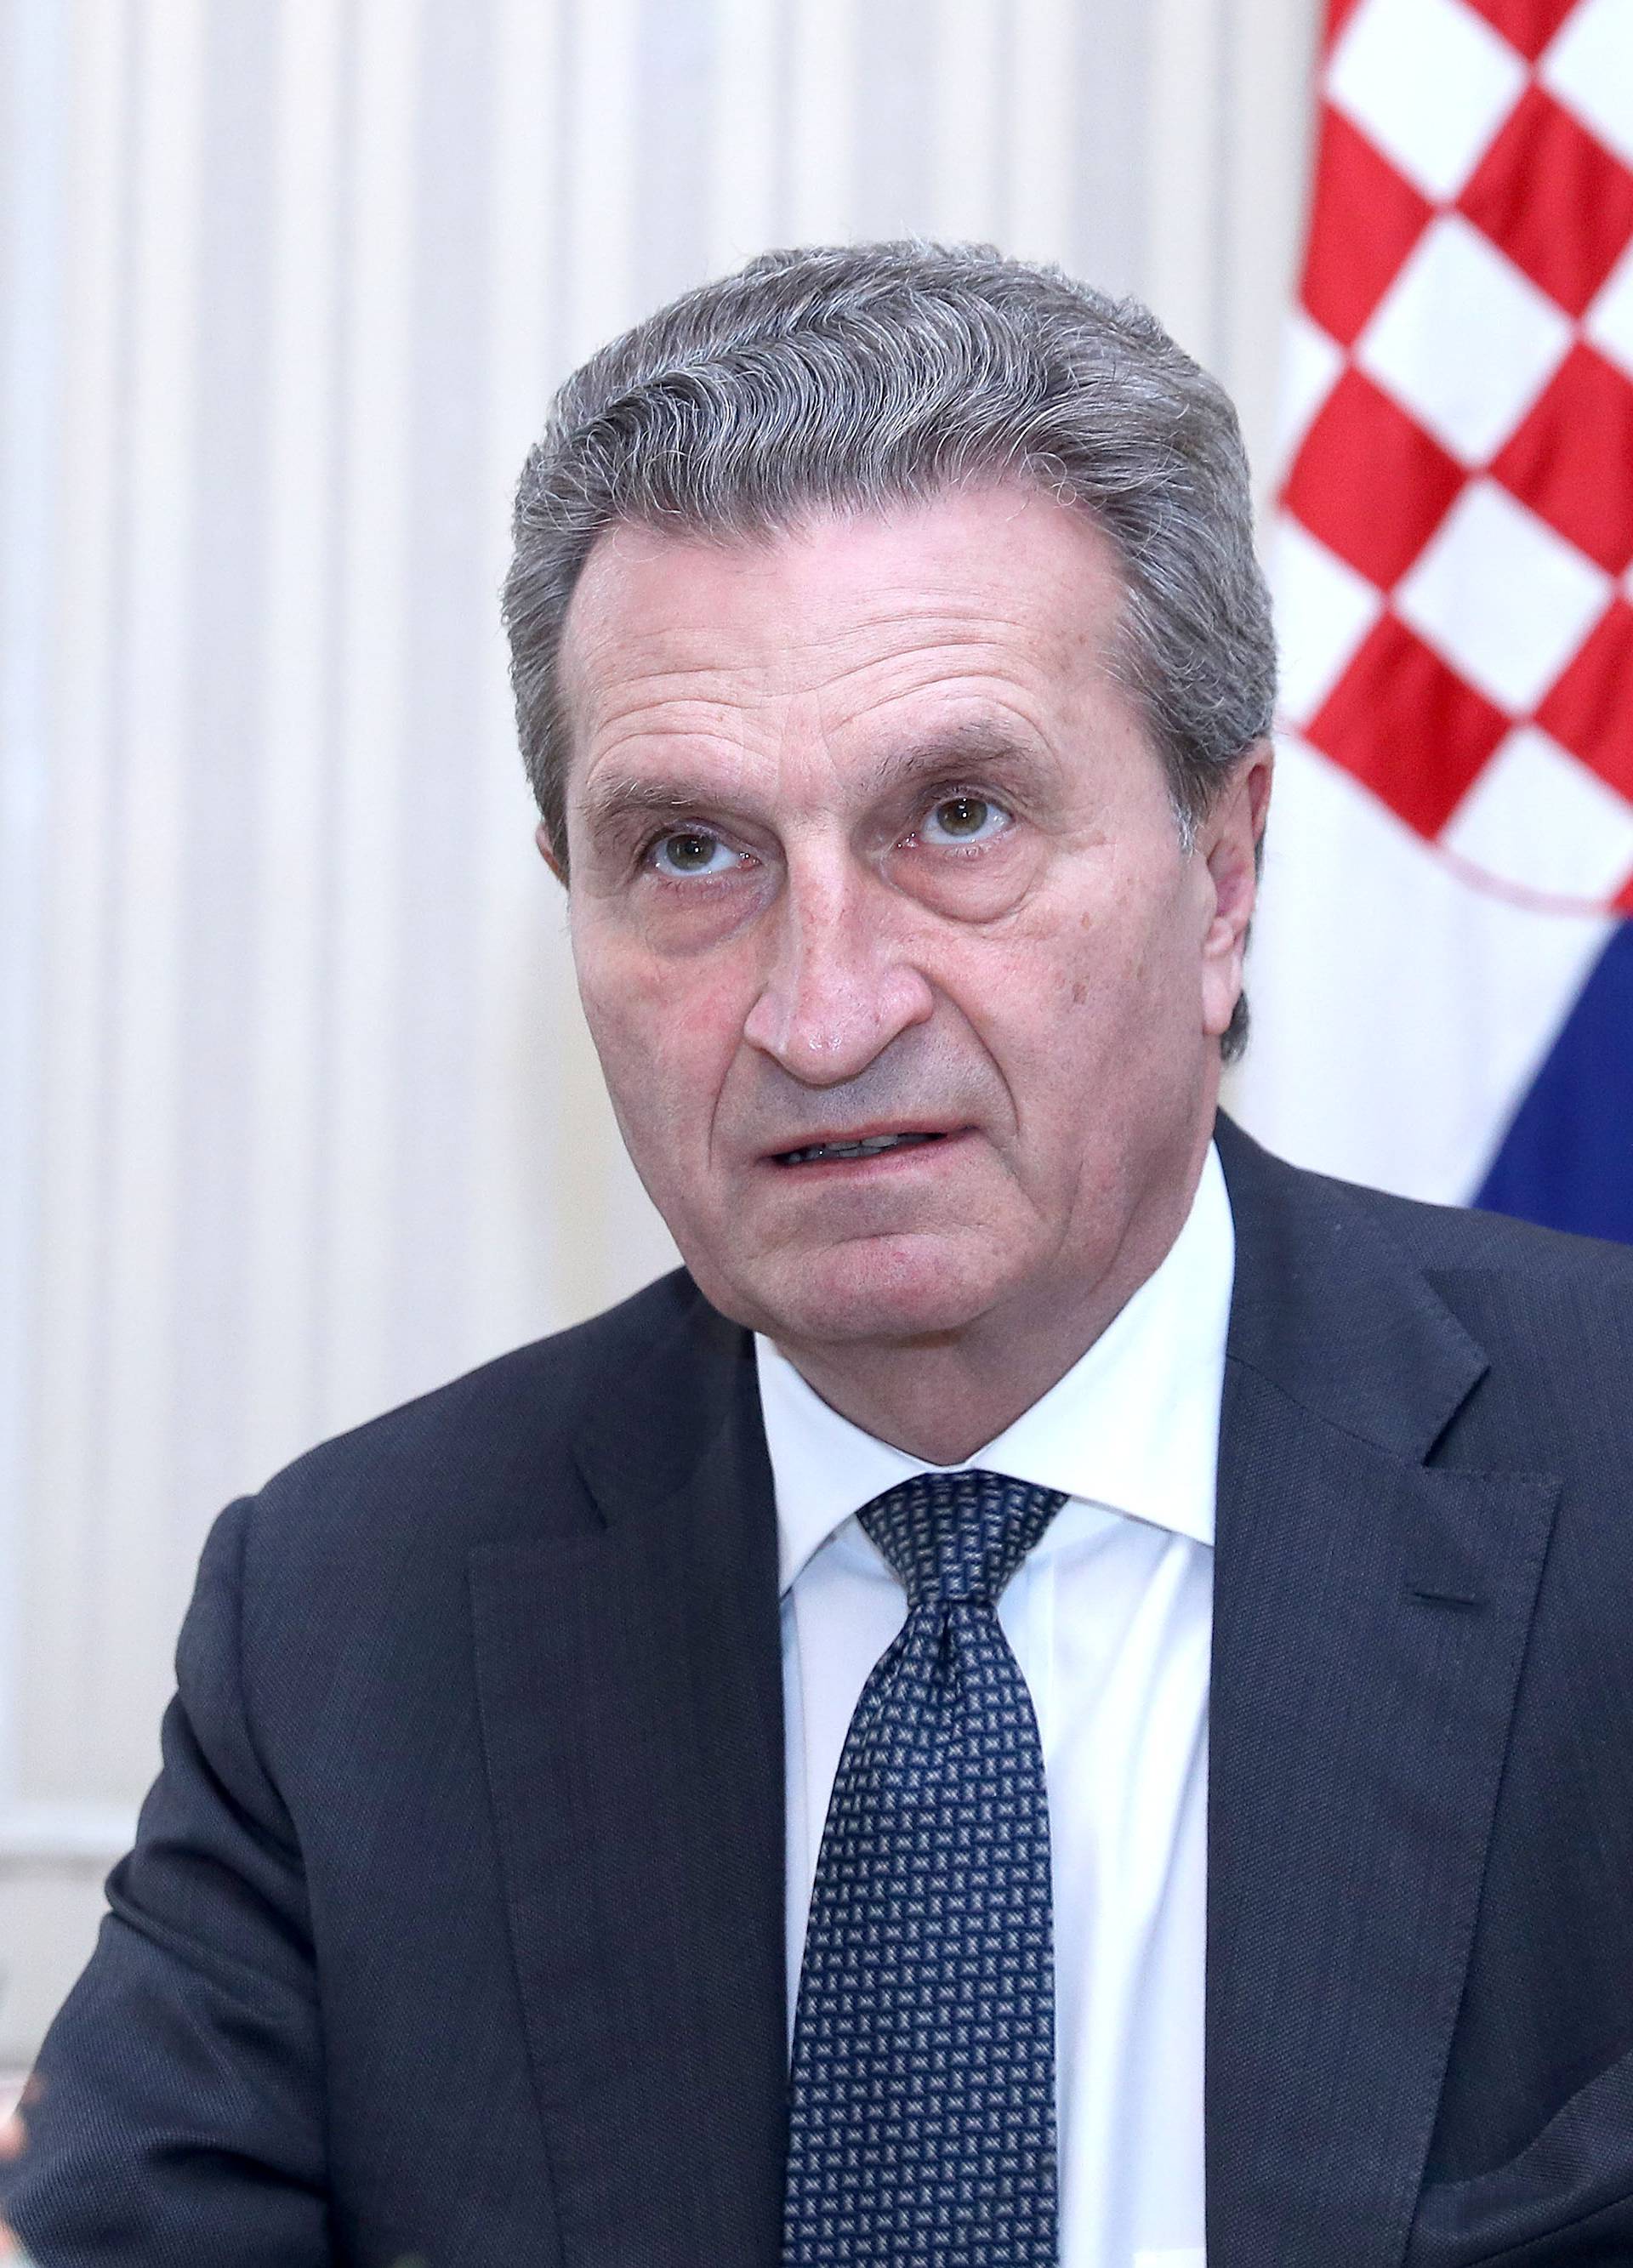 Oettinger izrazio razumijevanje za zastoj reformi u Hrvatskoj